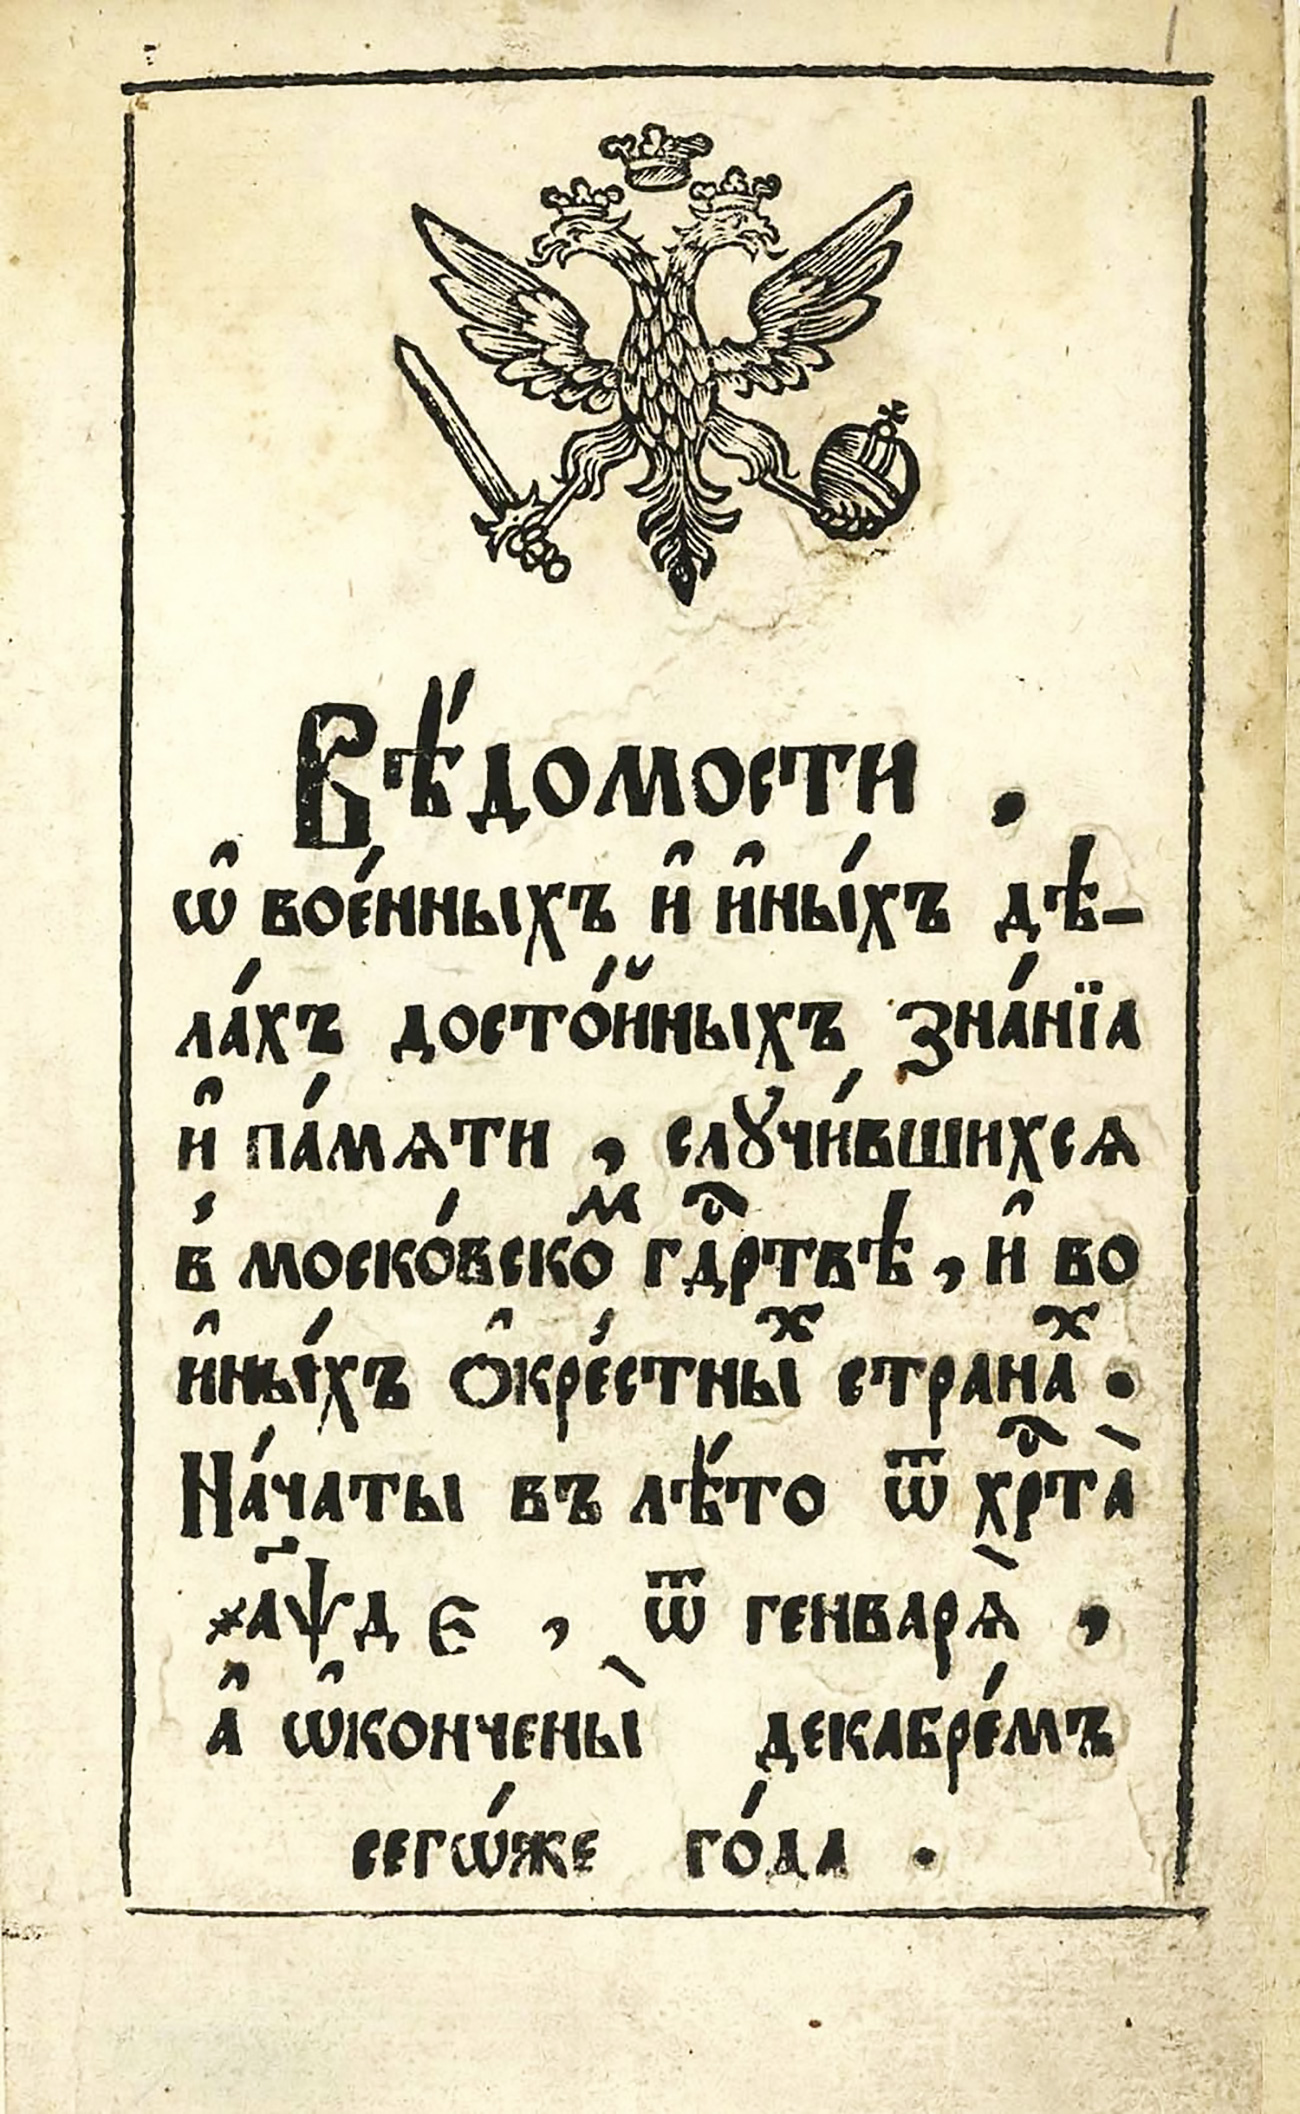 l primo giornale russo, “Vedomosti” (“Il Bollettino”), stampato nel 1703. Fonte: Foto d’archivio